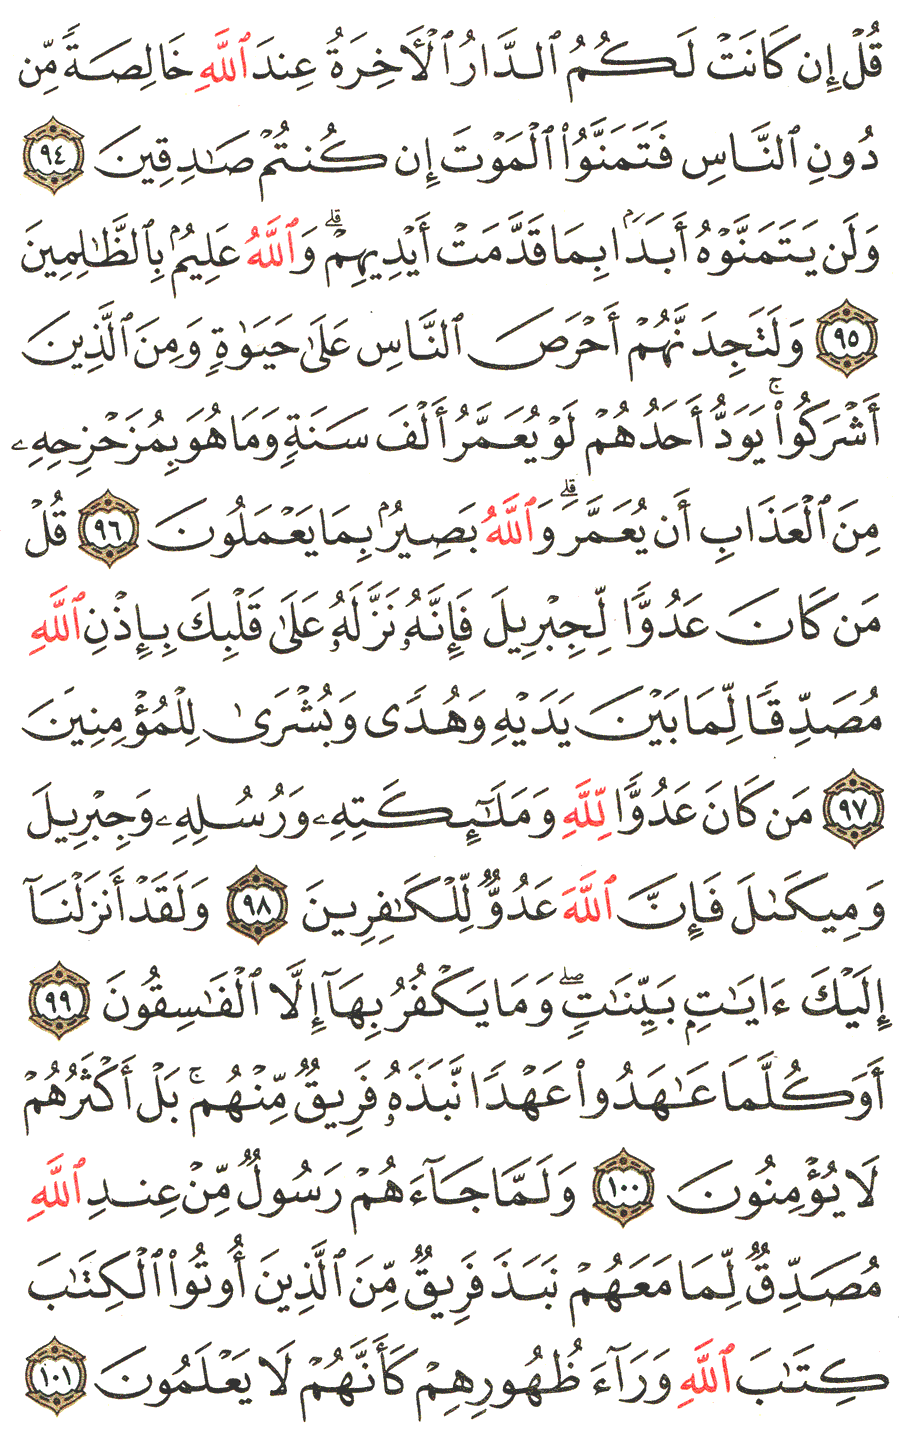 الصفحة رقم  15 من القرآن الكريم مكتوبة من المصحف